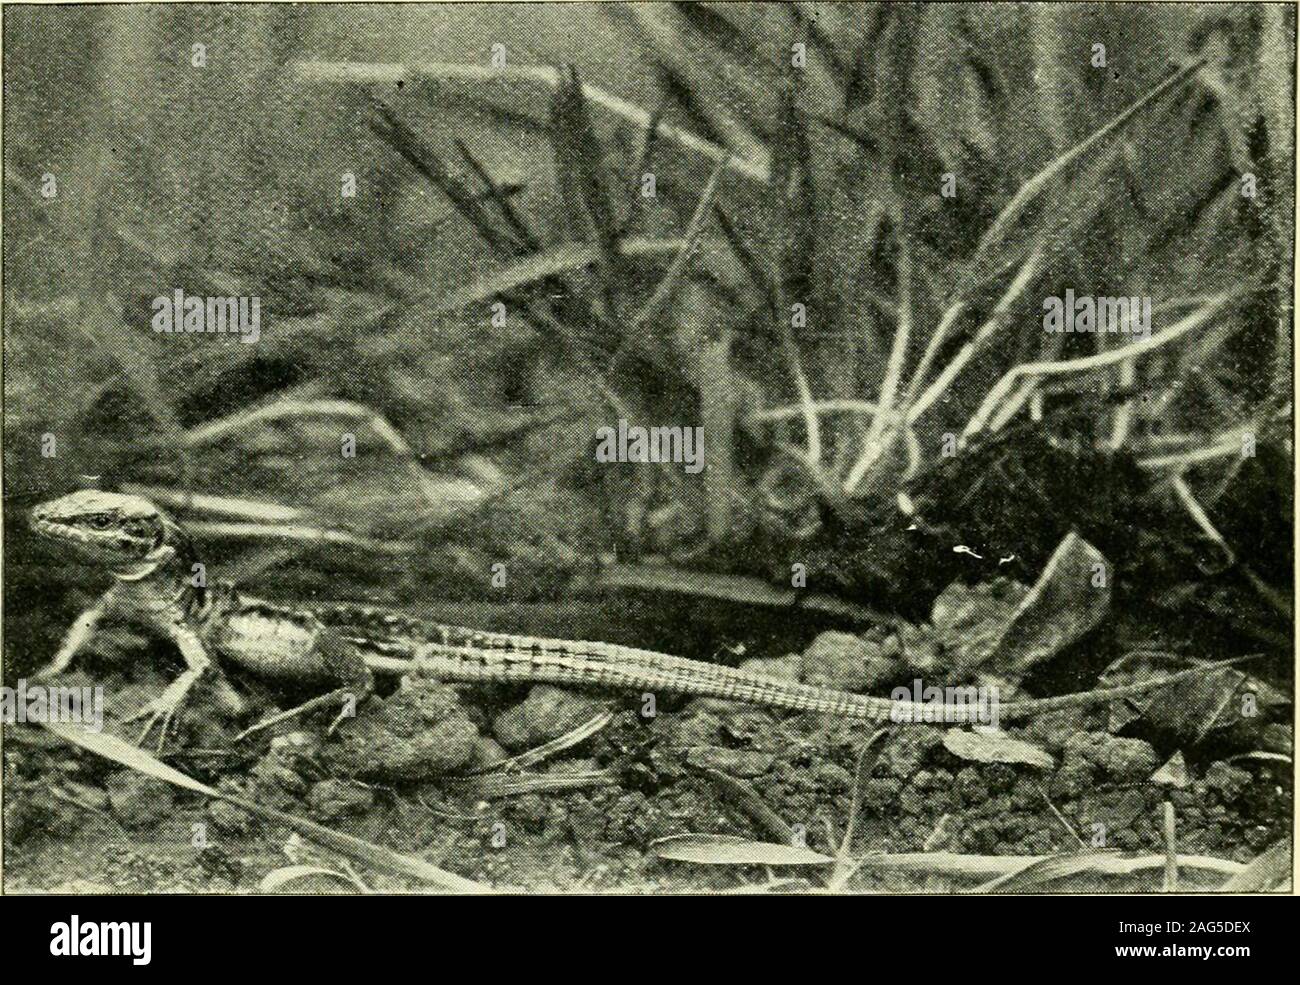 . L'histoire de la vie des lézards et leur distribution locale dans les îles britanniques. Reptiles, p. 92. Chapitre IX le lézard des murailles, LAGERTA MURALIS HABITUDES DE DISTRIBUTION DESCRIPTION CARACTÈRES COMMUNS À LA FAMILLE. Nous avons déjà expliqué pourquoi il n'est que le greenlizard a trouvé une place dans un ouvrage sur l'espèce britannique,et c'est pour les mêmes raisons que le wall lizard Lacerta muralis,ici, doit être inclus. Le onecannot être considérée comme une espèce à moins qu'être Britannique theother également ainsi considérée, puisqu'il s'agit simplement d'un questionof l'inclusion ou l'omission du Channel Islands dansle domaine libellés B Banque D'Images